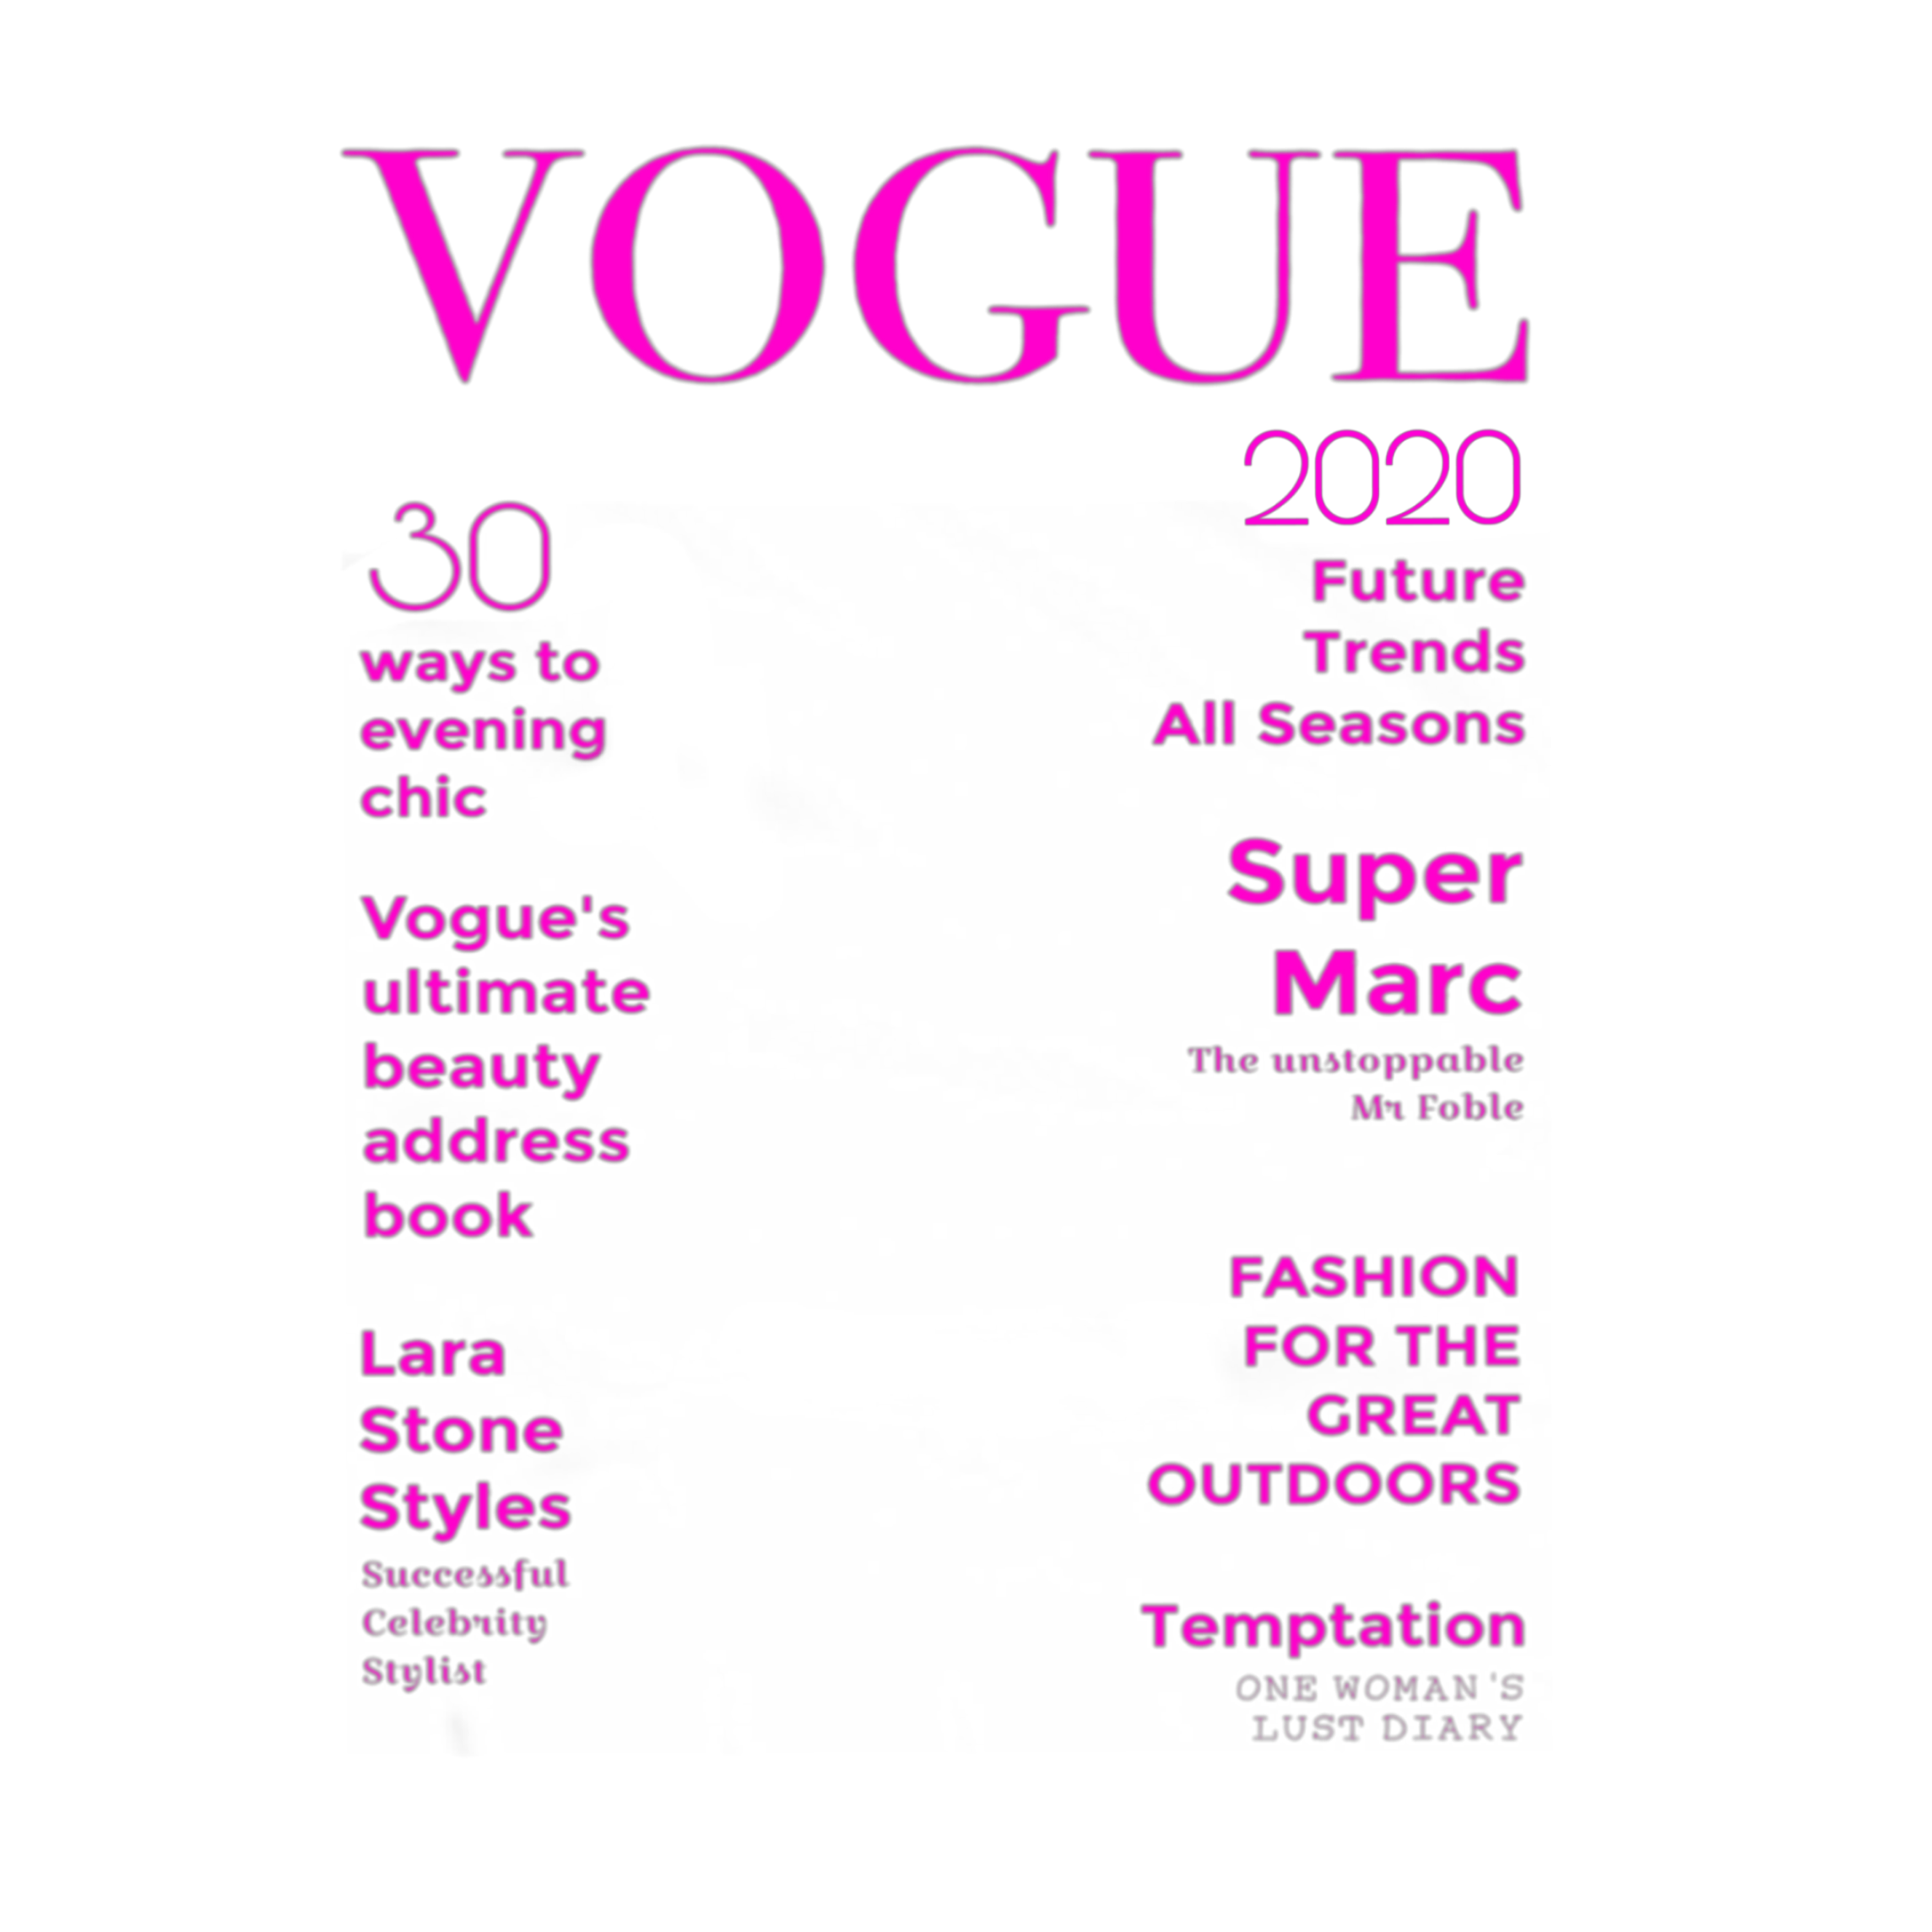 Шаблоны журналов для фотошопа. Обложка журнала Vogue для фотошопа. Макет обложки журнала. Надписи из журнала Vogue. Надписи для обложки журнала.